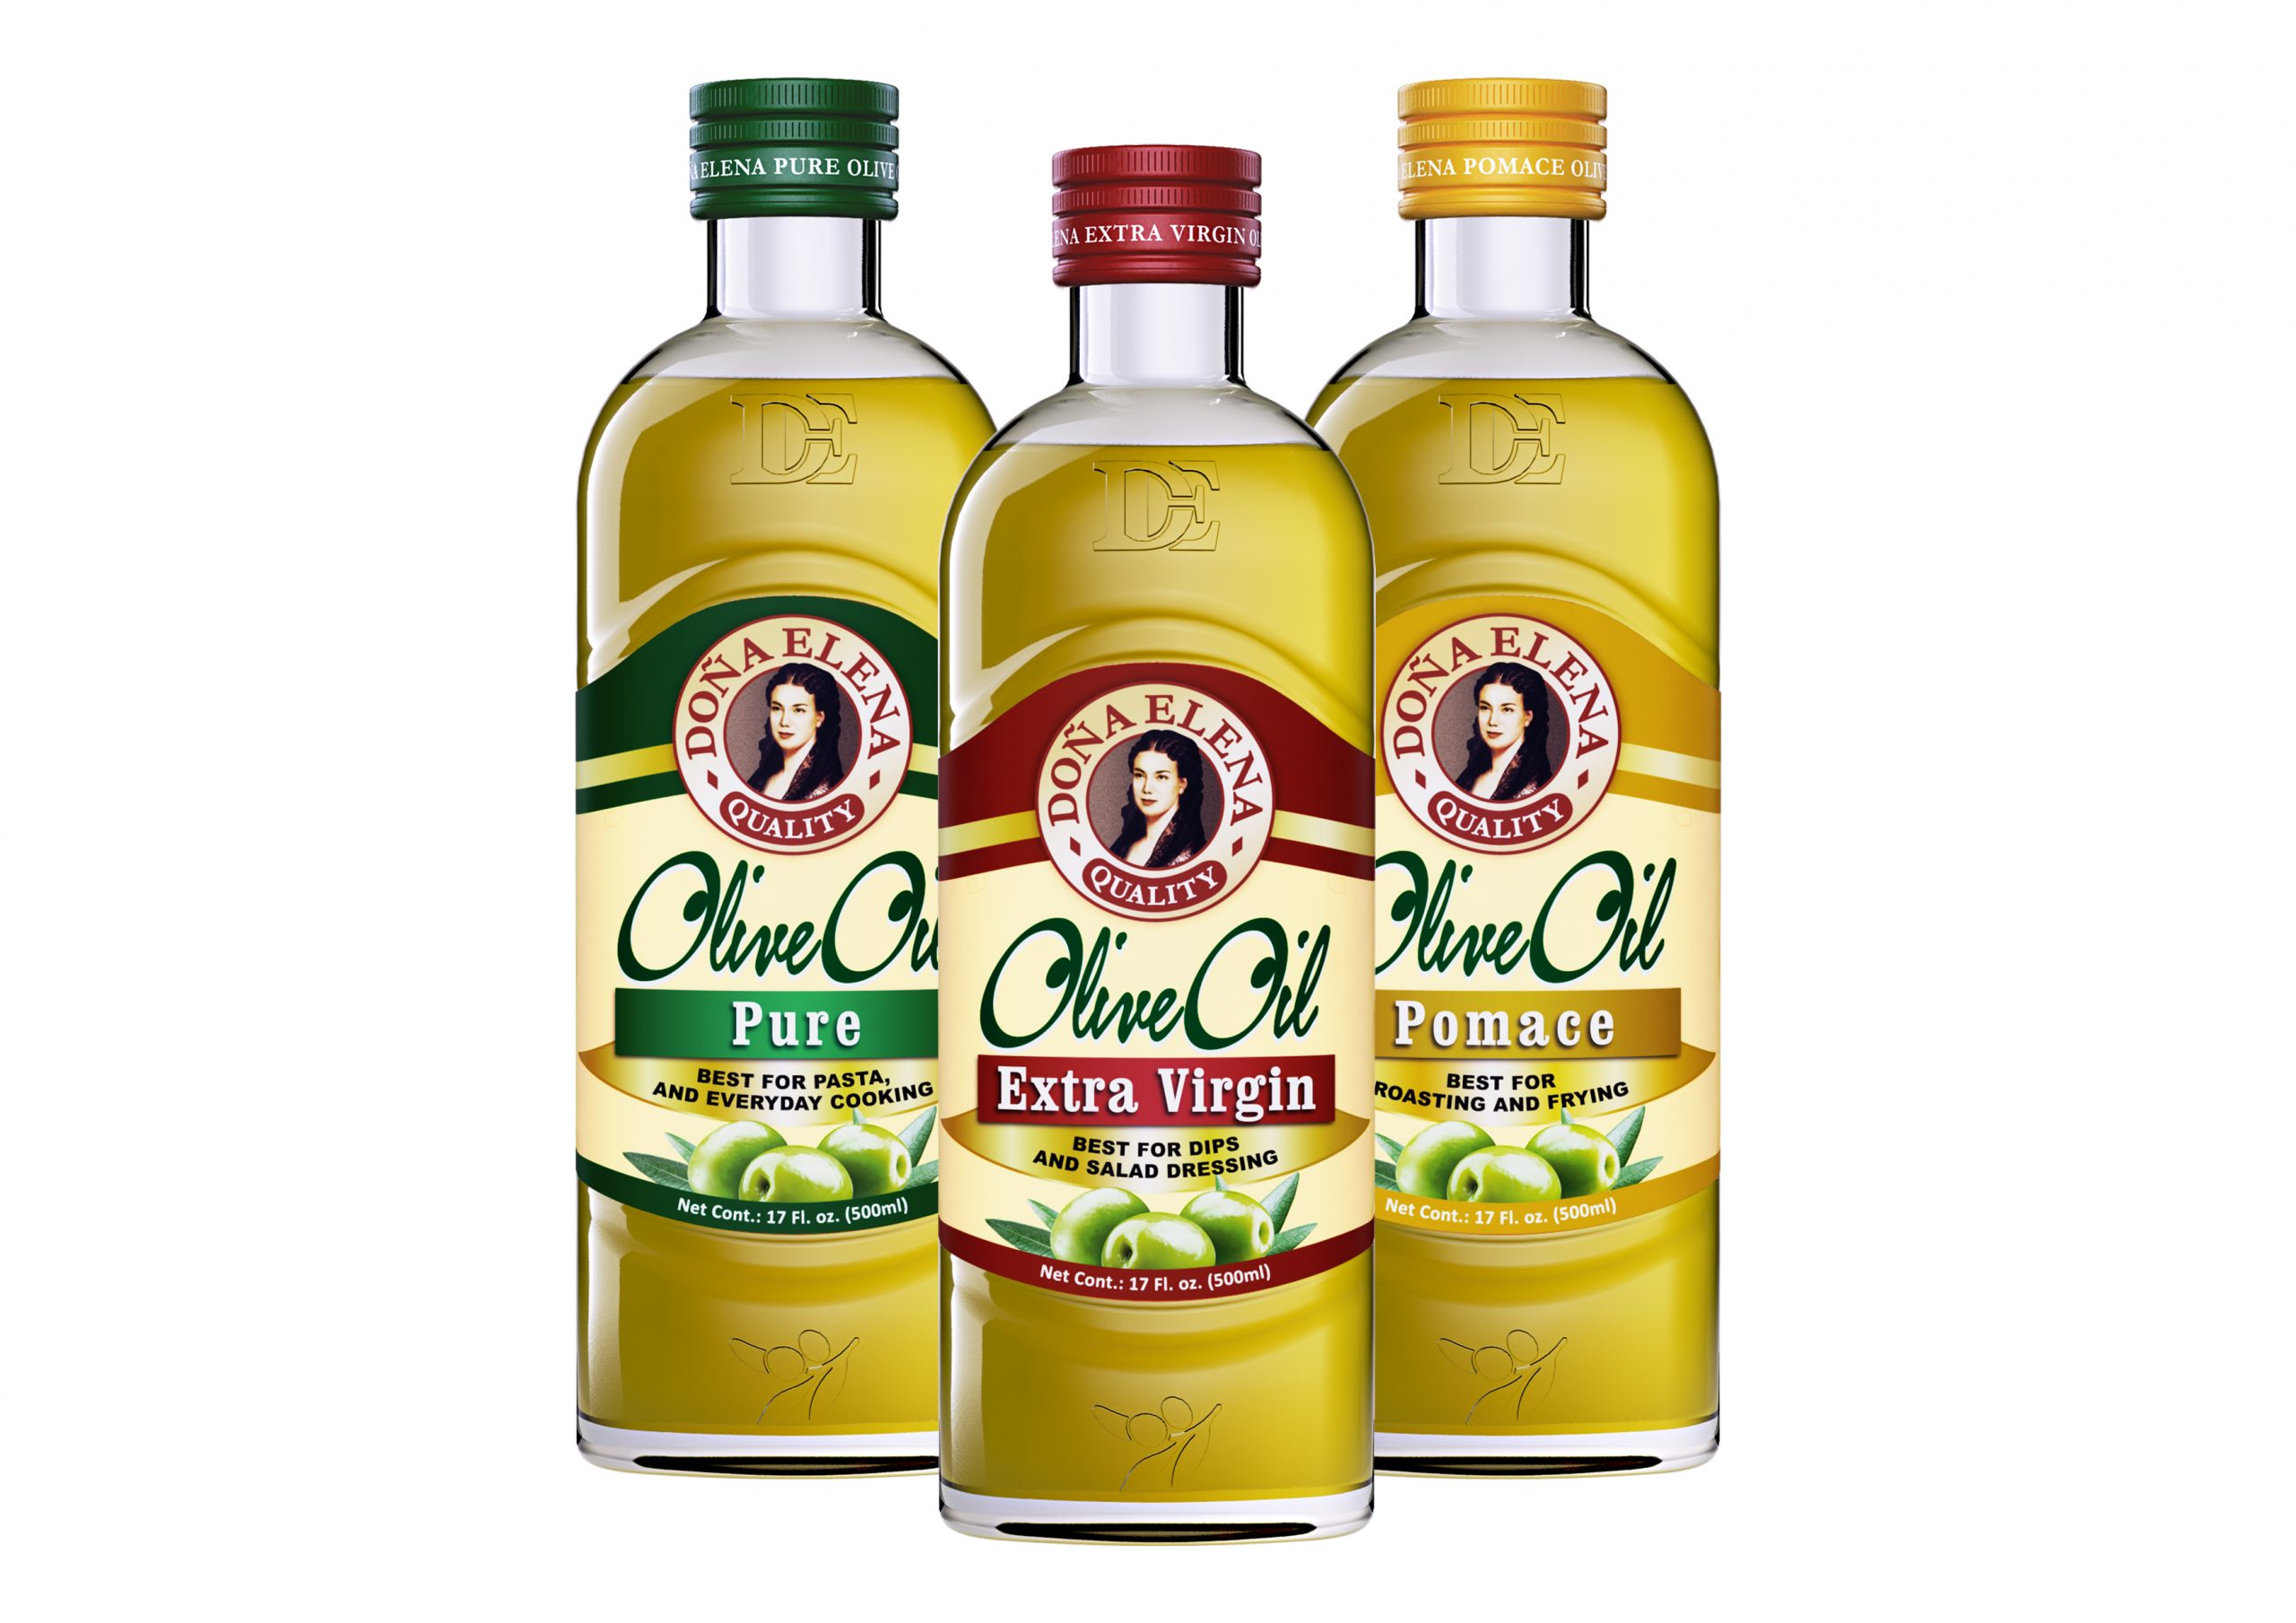 Фирма оливкового масла. Оливковое масло. Кипрское оливковое масло. Оливковое масло марки. Оливковое масло Pomace.